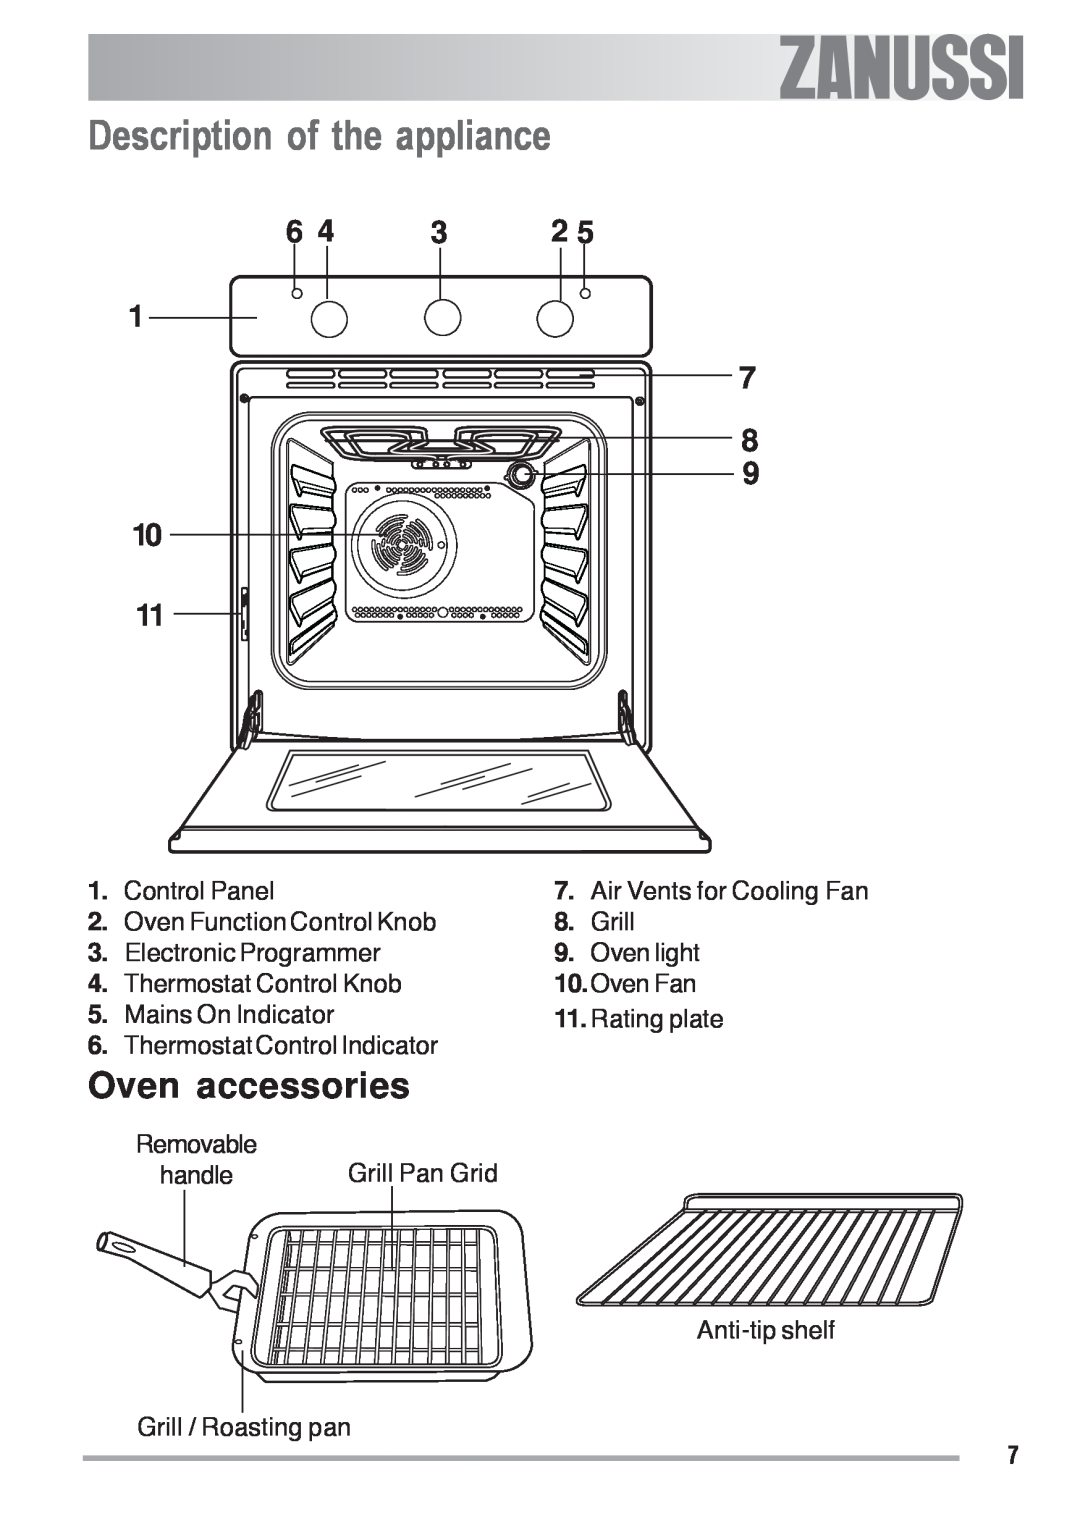 Zanussi ZOB 330 manual Description of the appliance, Oven accessories 